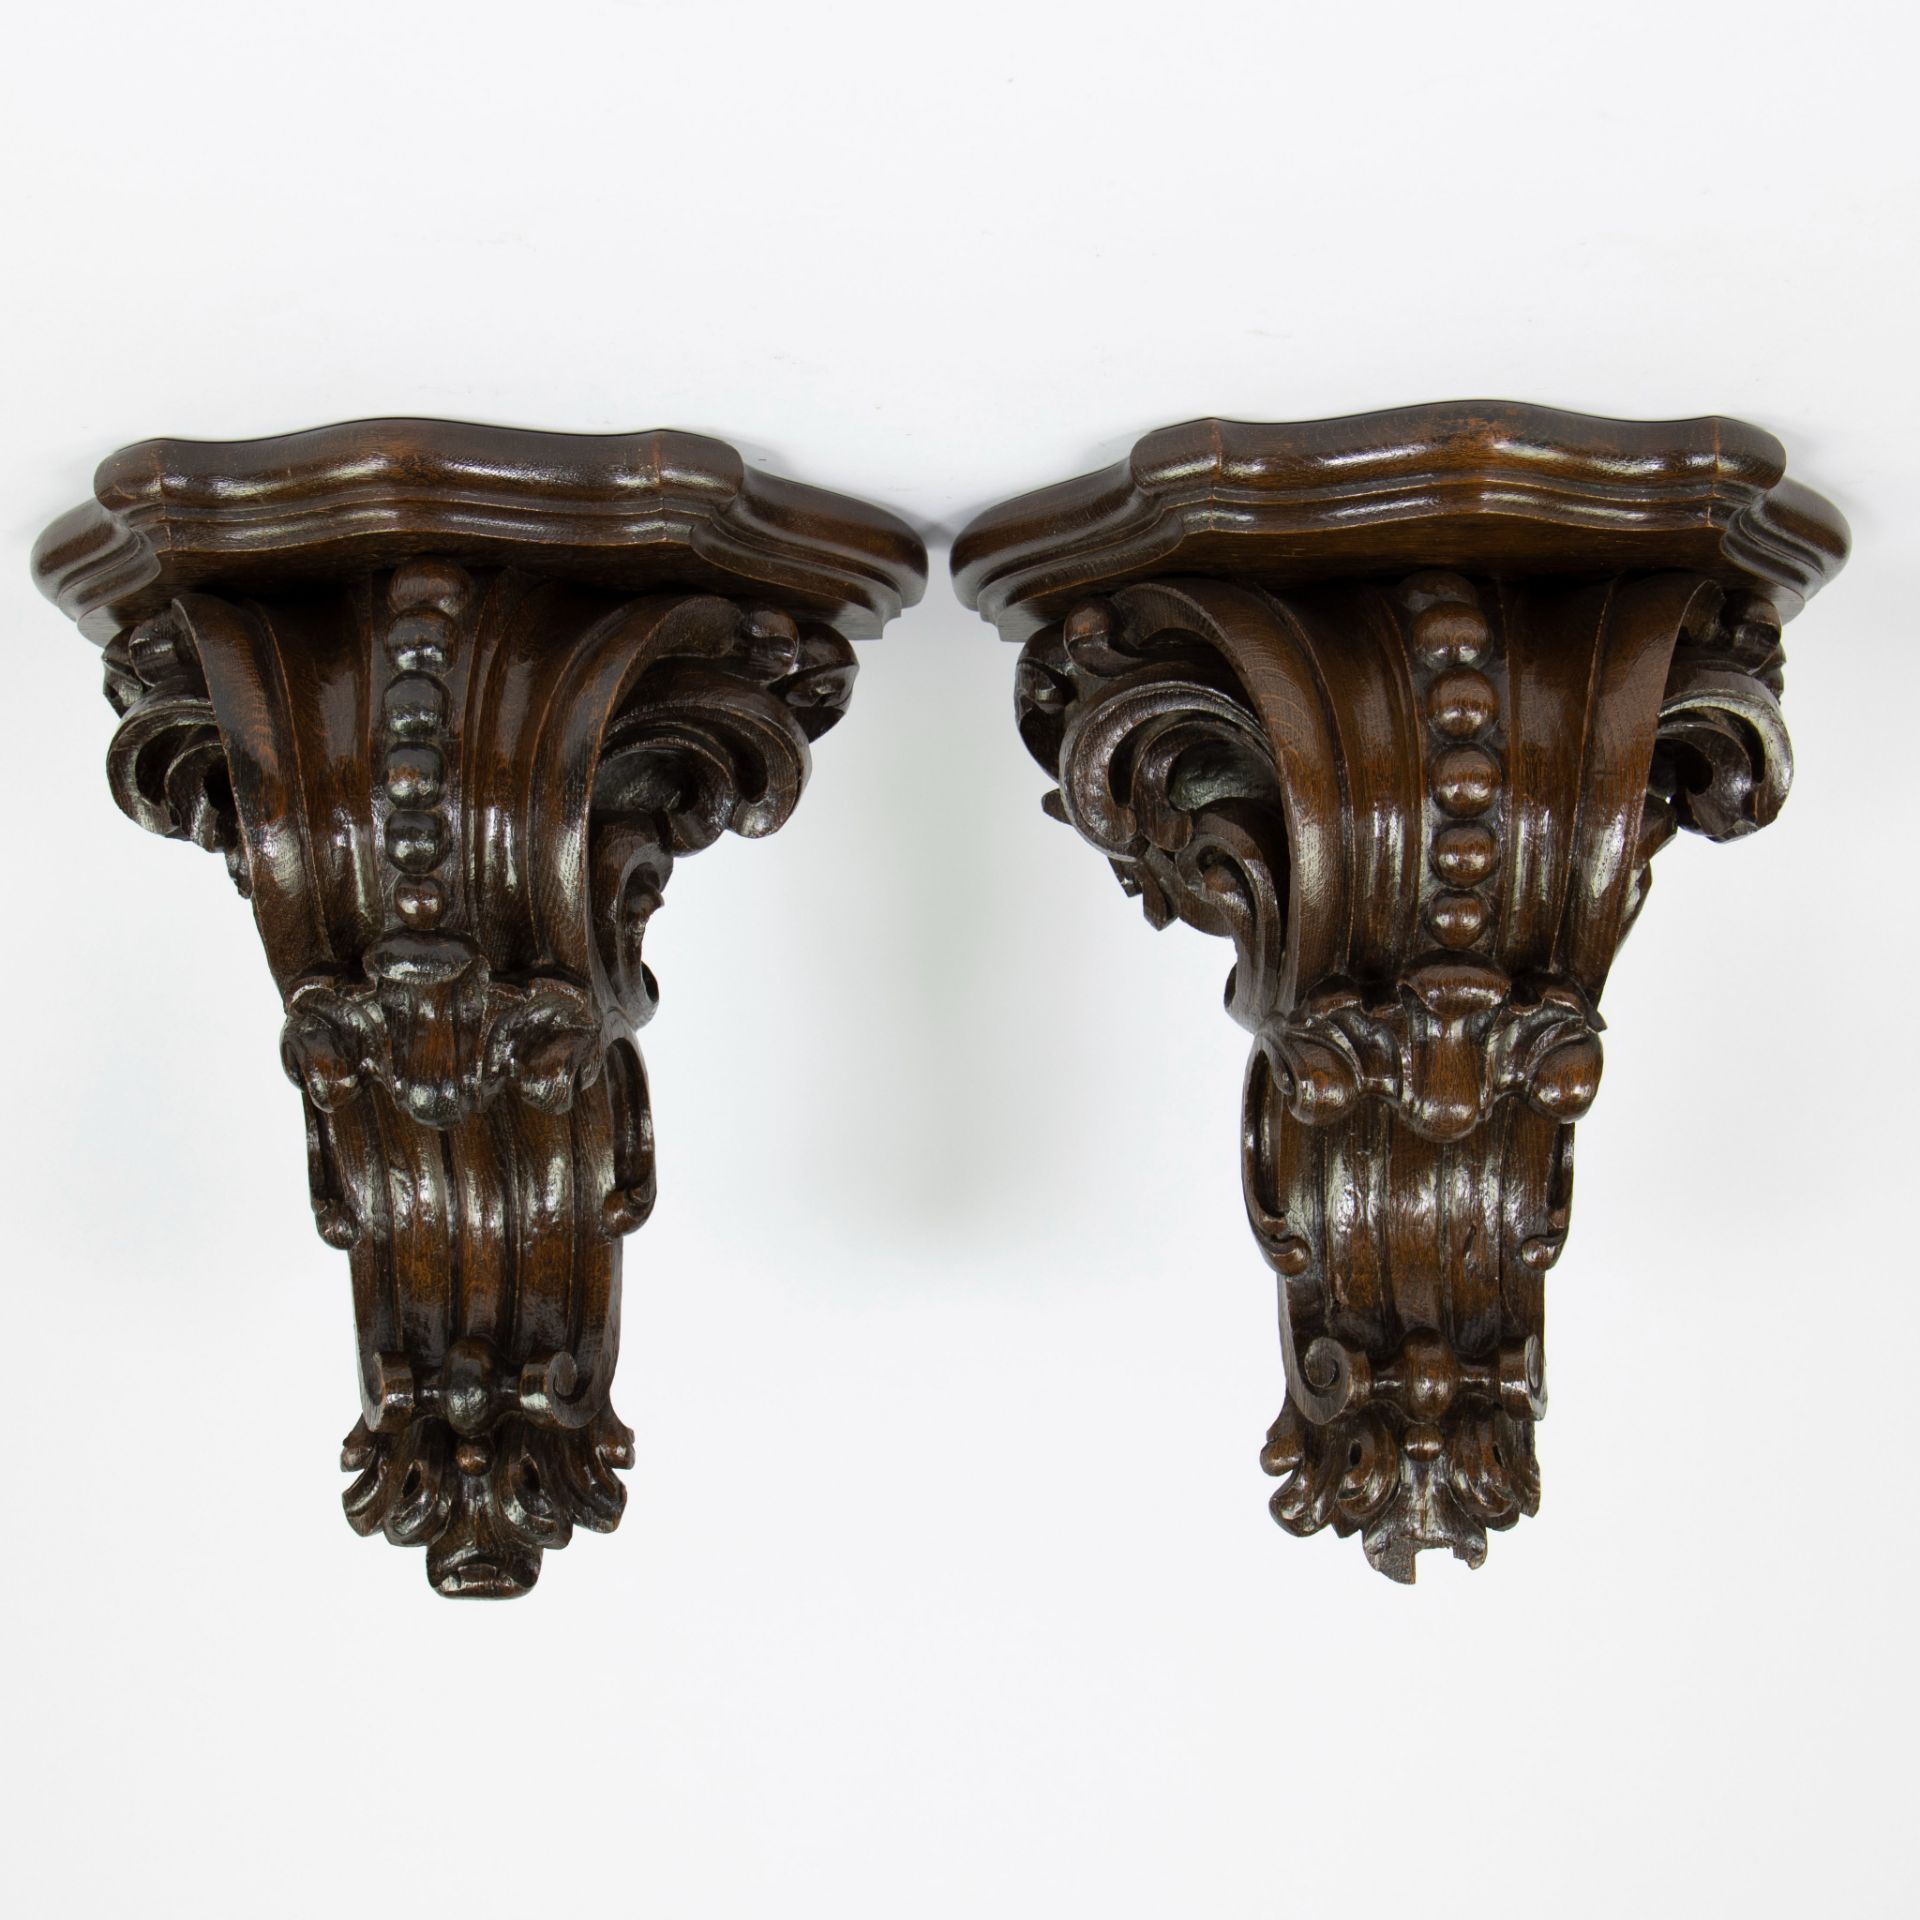 Pair of antique oak consoles